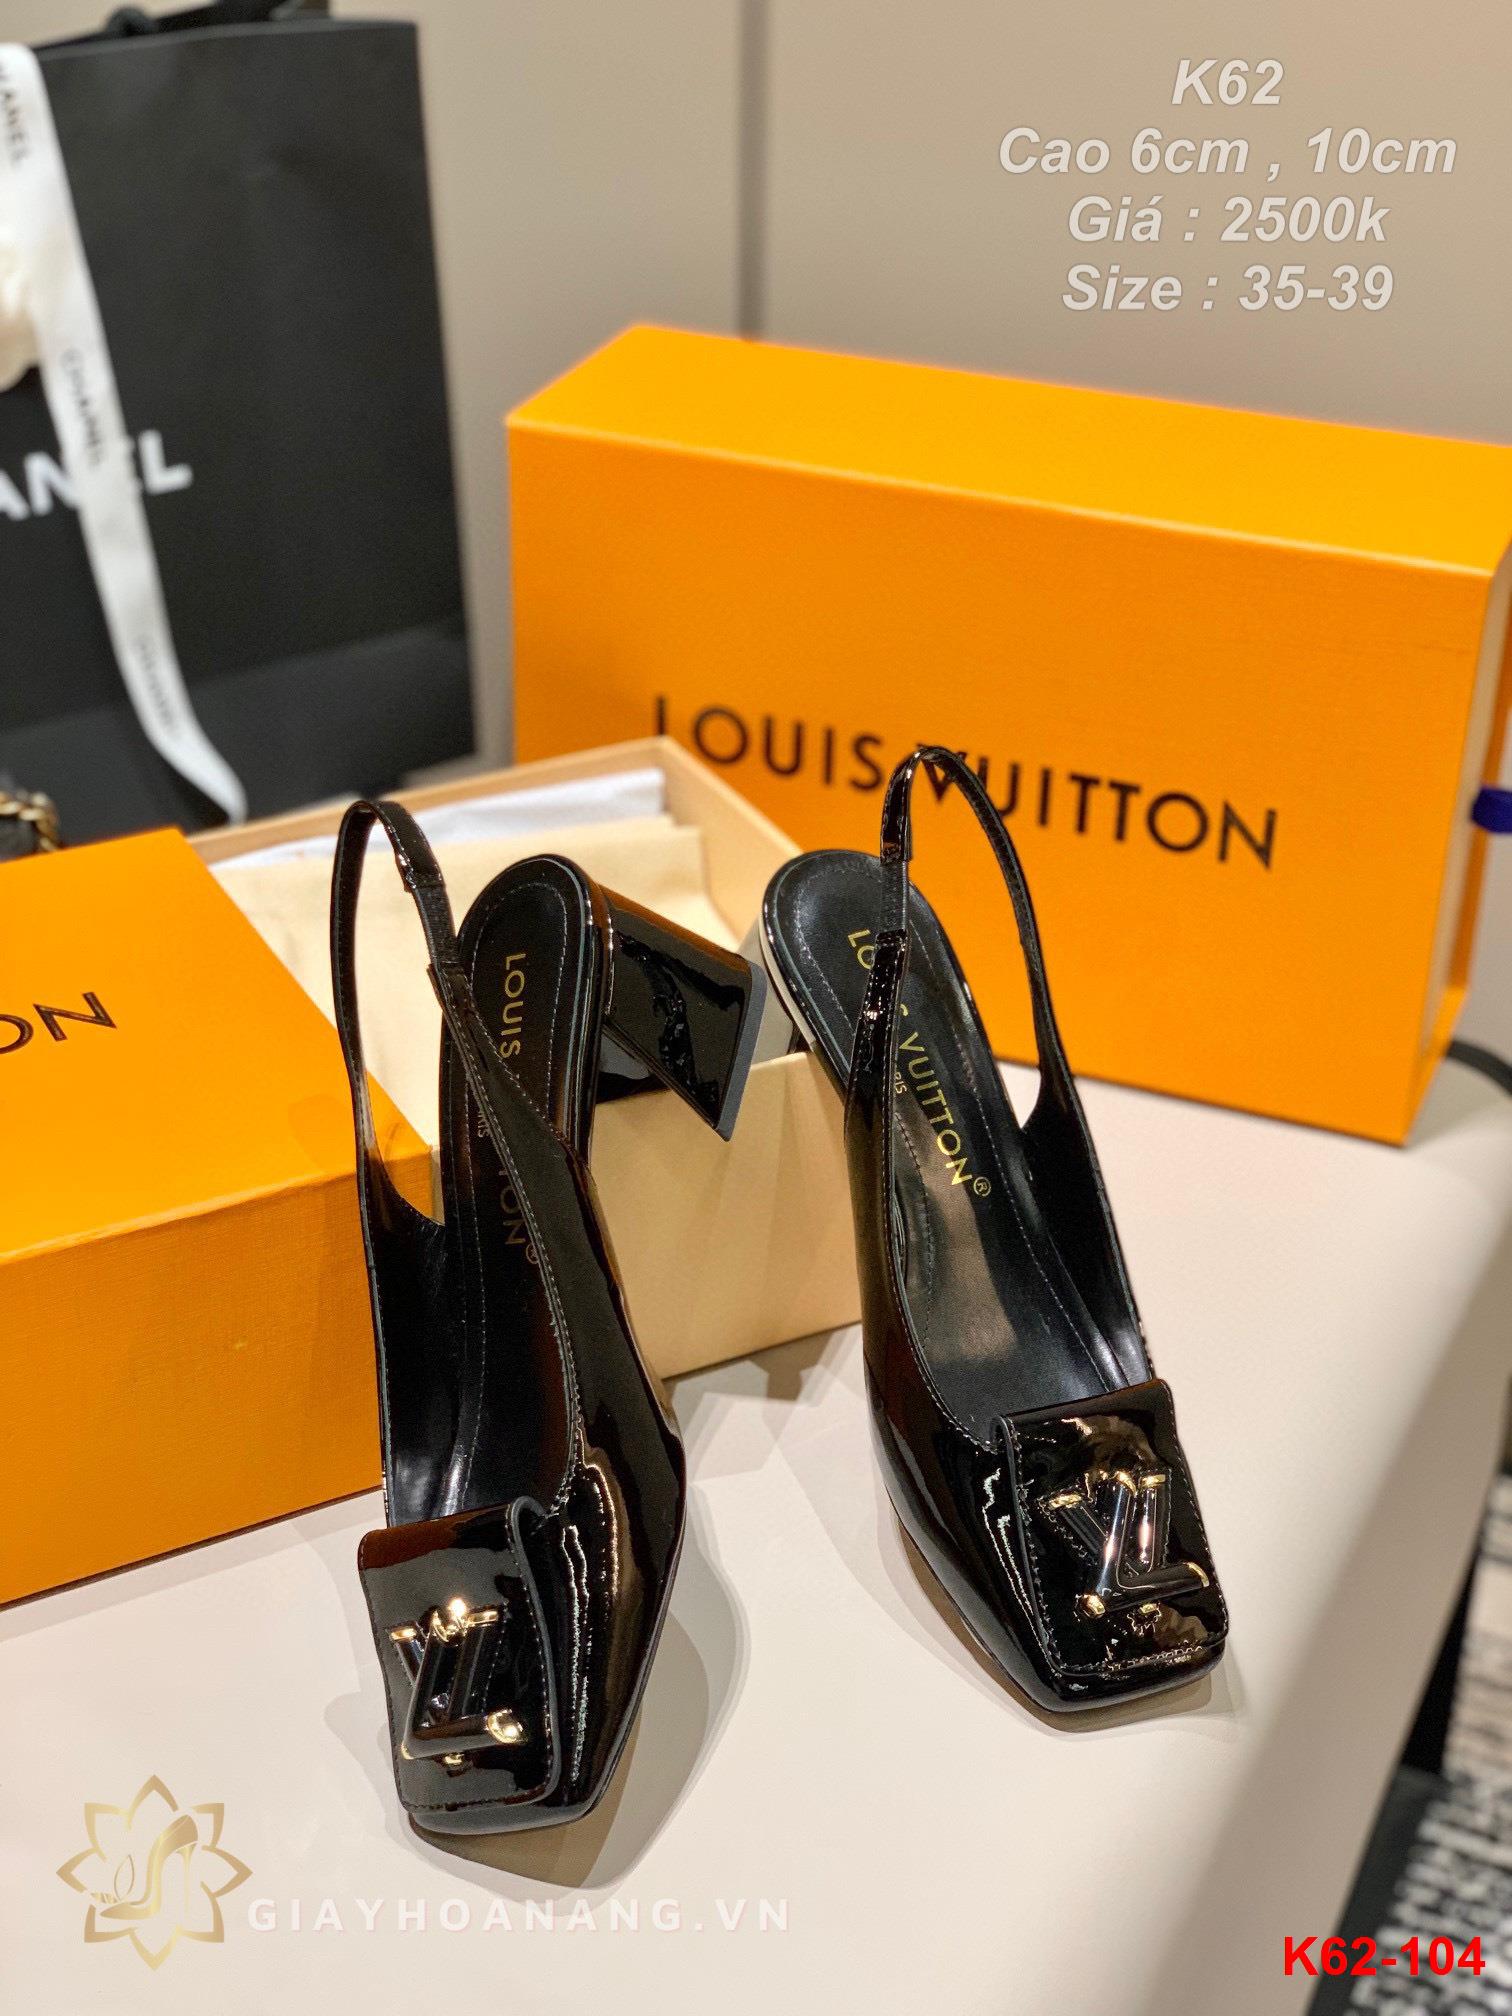 K62-104 Louis Vuitton sandal cao 6cm , 10cm siêu cấp